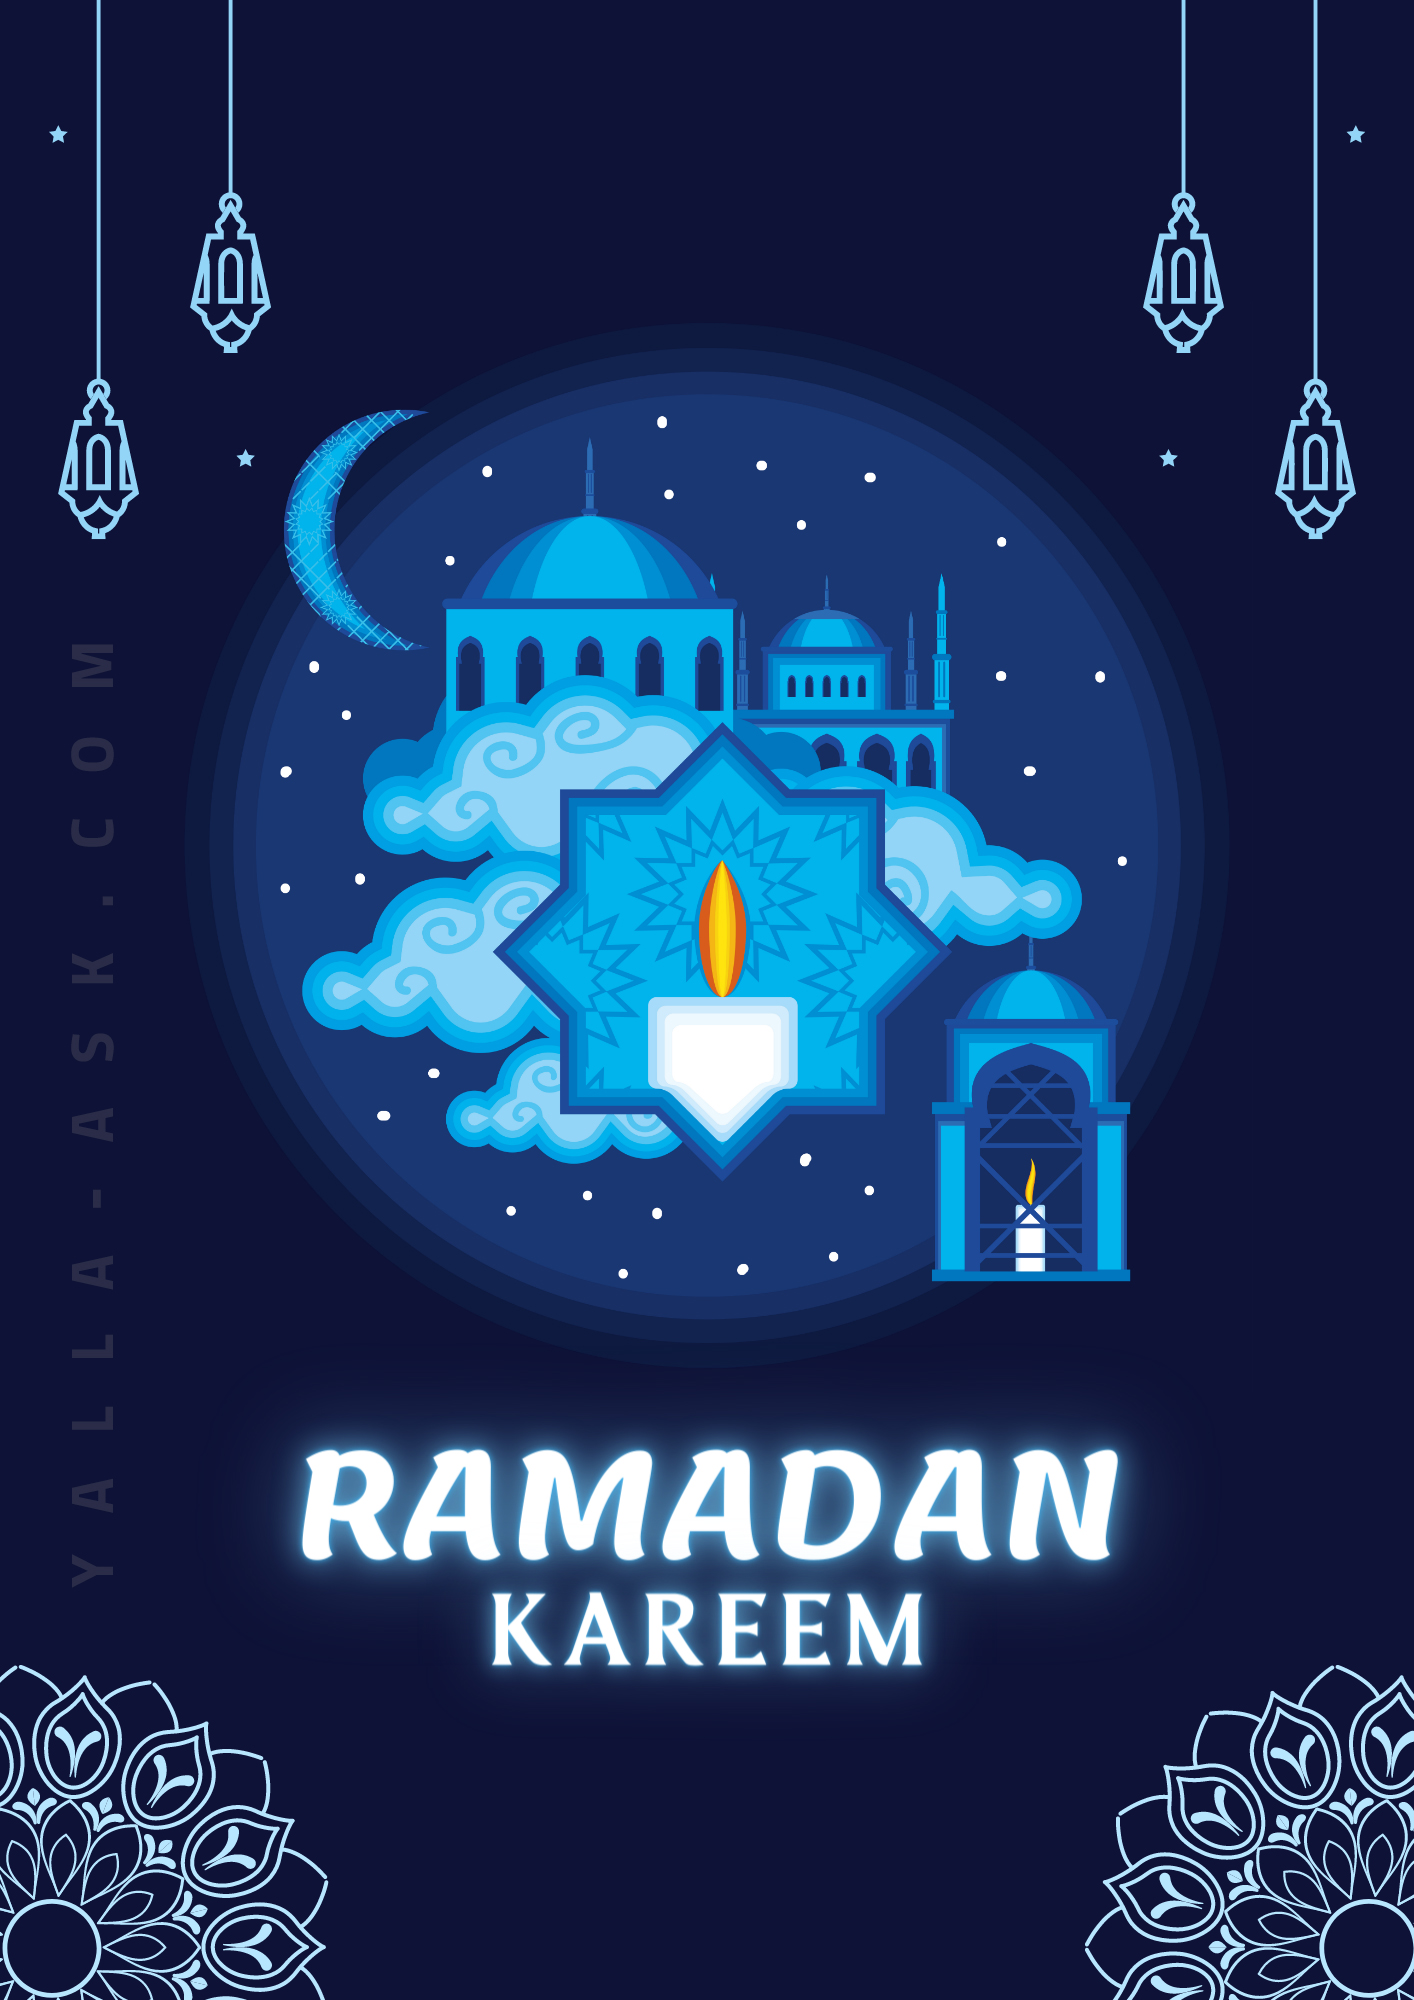 صور تهنئة شهر رمضان الكريم